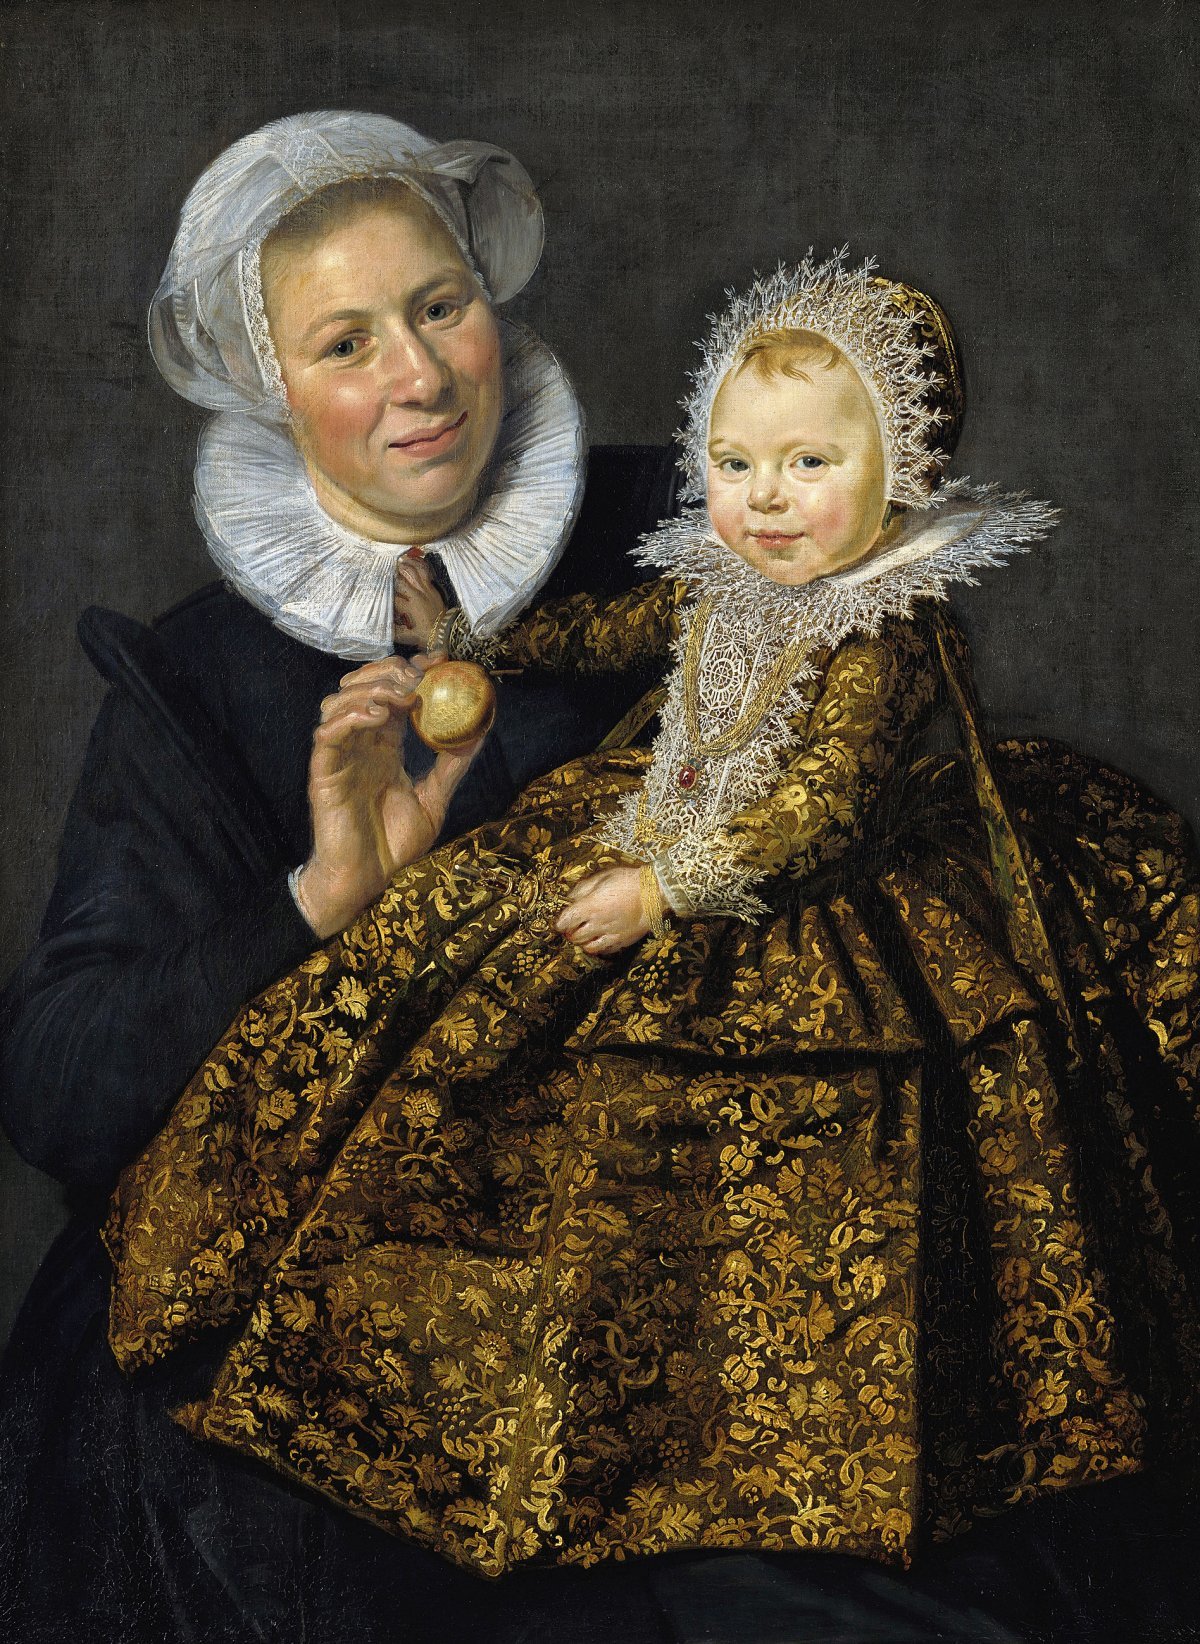 암스테르담의 유력 정치인이자 귀족의 딸 카타리나 호프트가 유모와 함께 있는 모습을 그린 1619∼1620년 초상화. 프란스 할스는 당대 부유한 상인부터 귀족까지 초상화를 의뢰하고 싶어 하는 인기 작가였다. 레익스미술관 제공